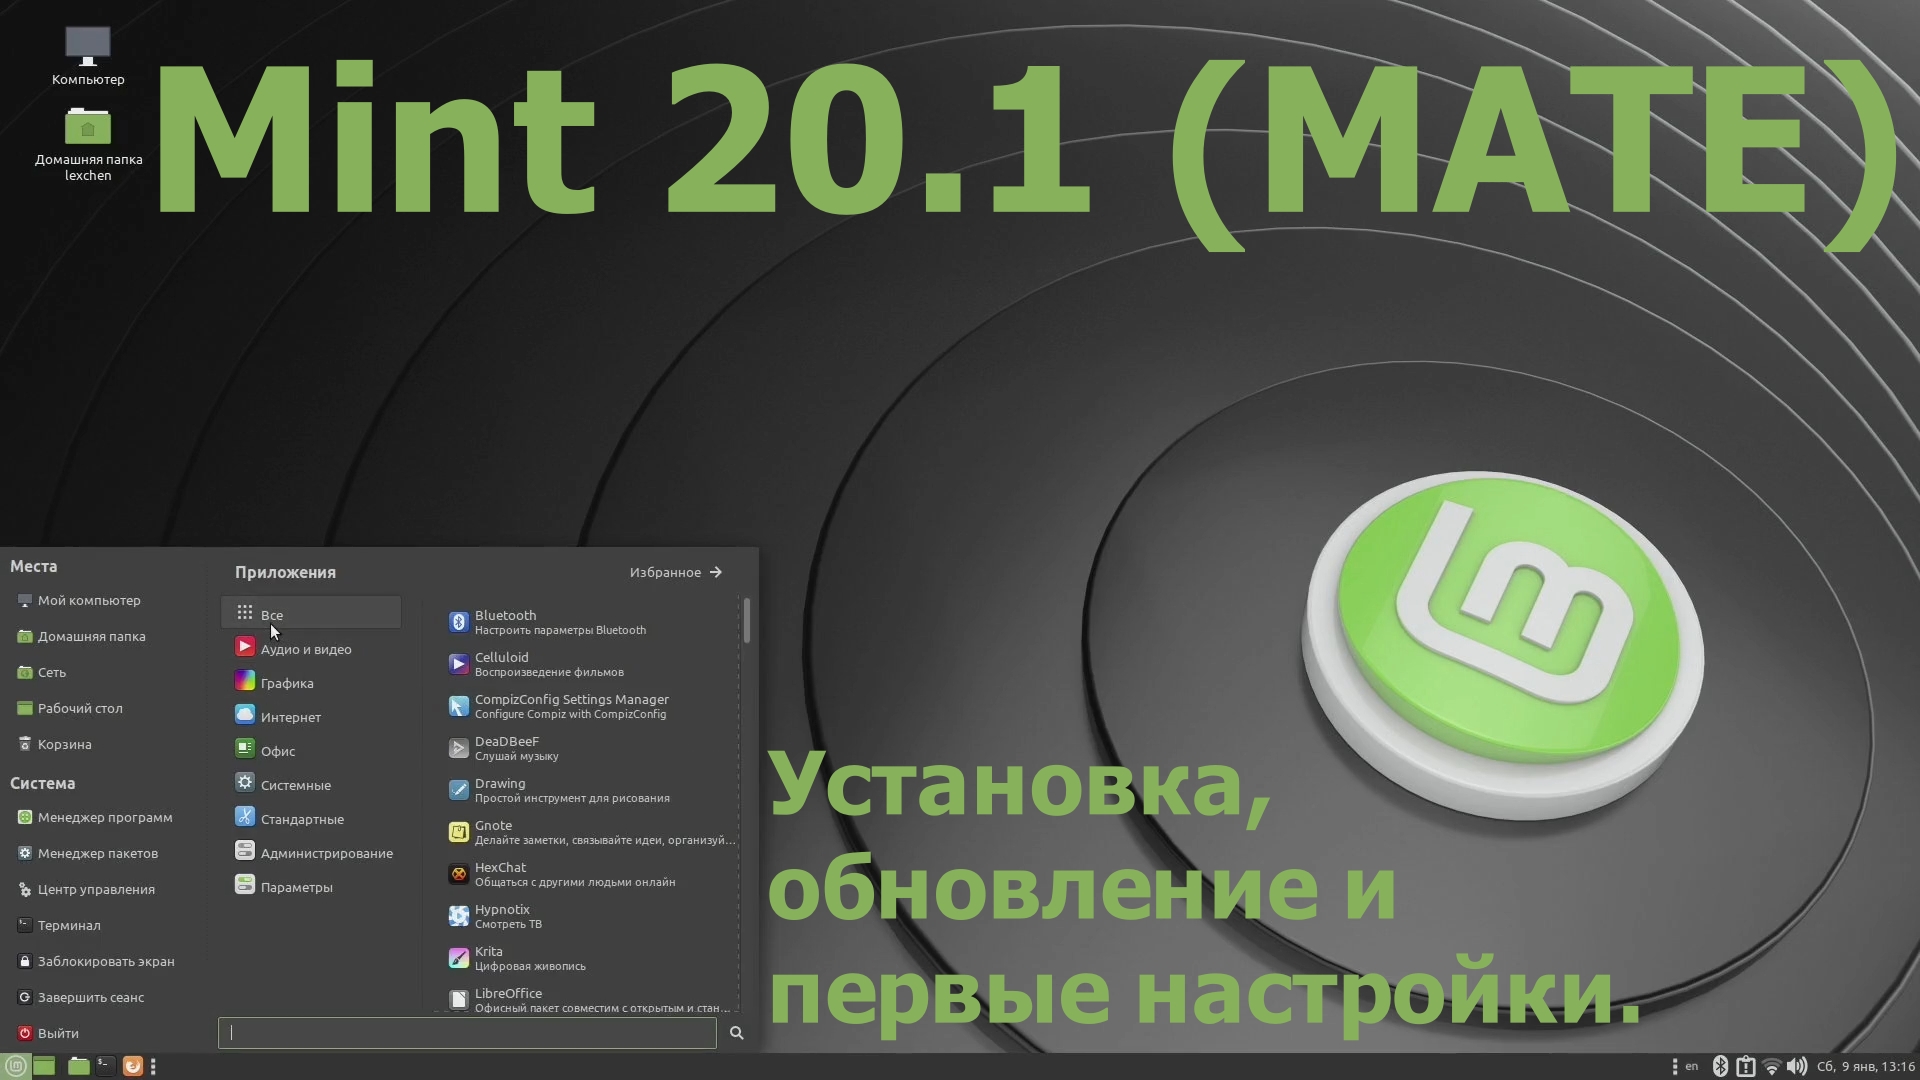 Дистрибутив Mint 20.1 (Mate) (Установка, обновление и первые настройки) (Январь 2021)